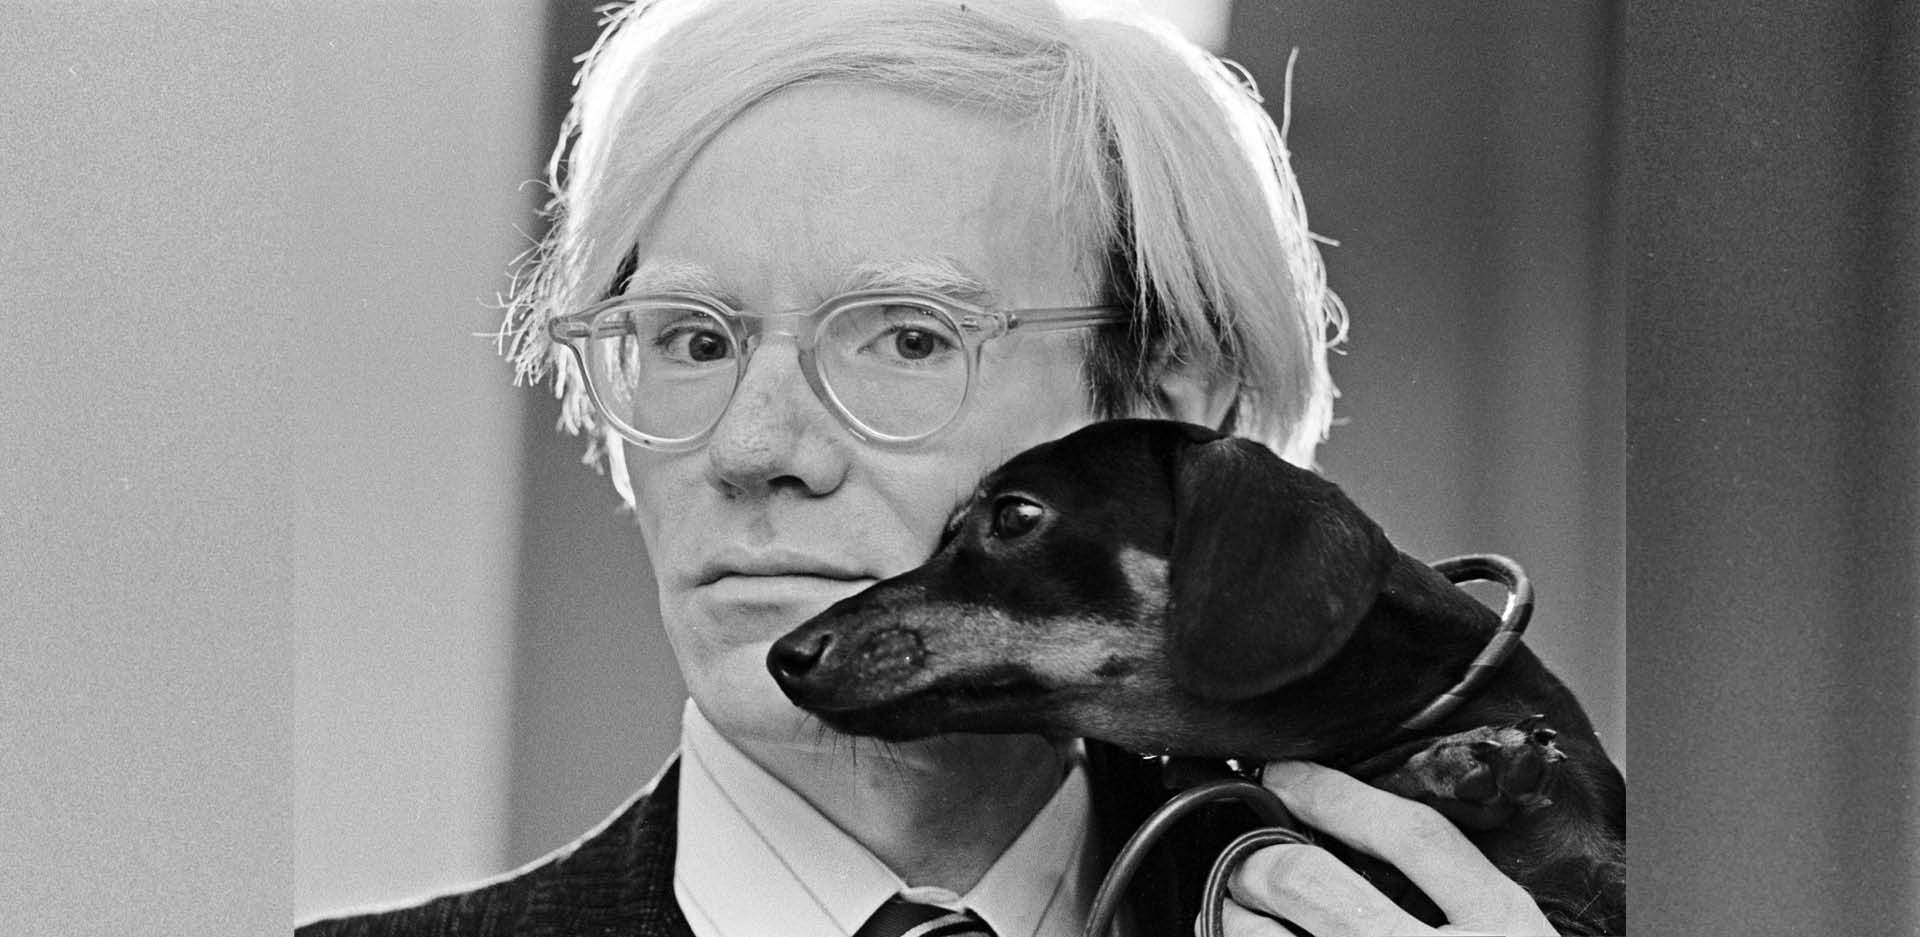 Η Τaschen επανεκδίδει 8 κλασσικά εικονογραφημένα βιβλία του Andy Warhol από την δεκαετία του 1950.